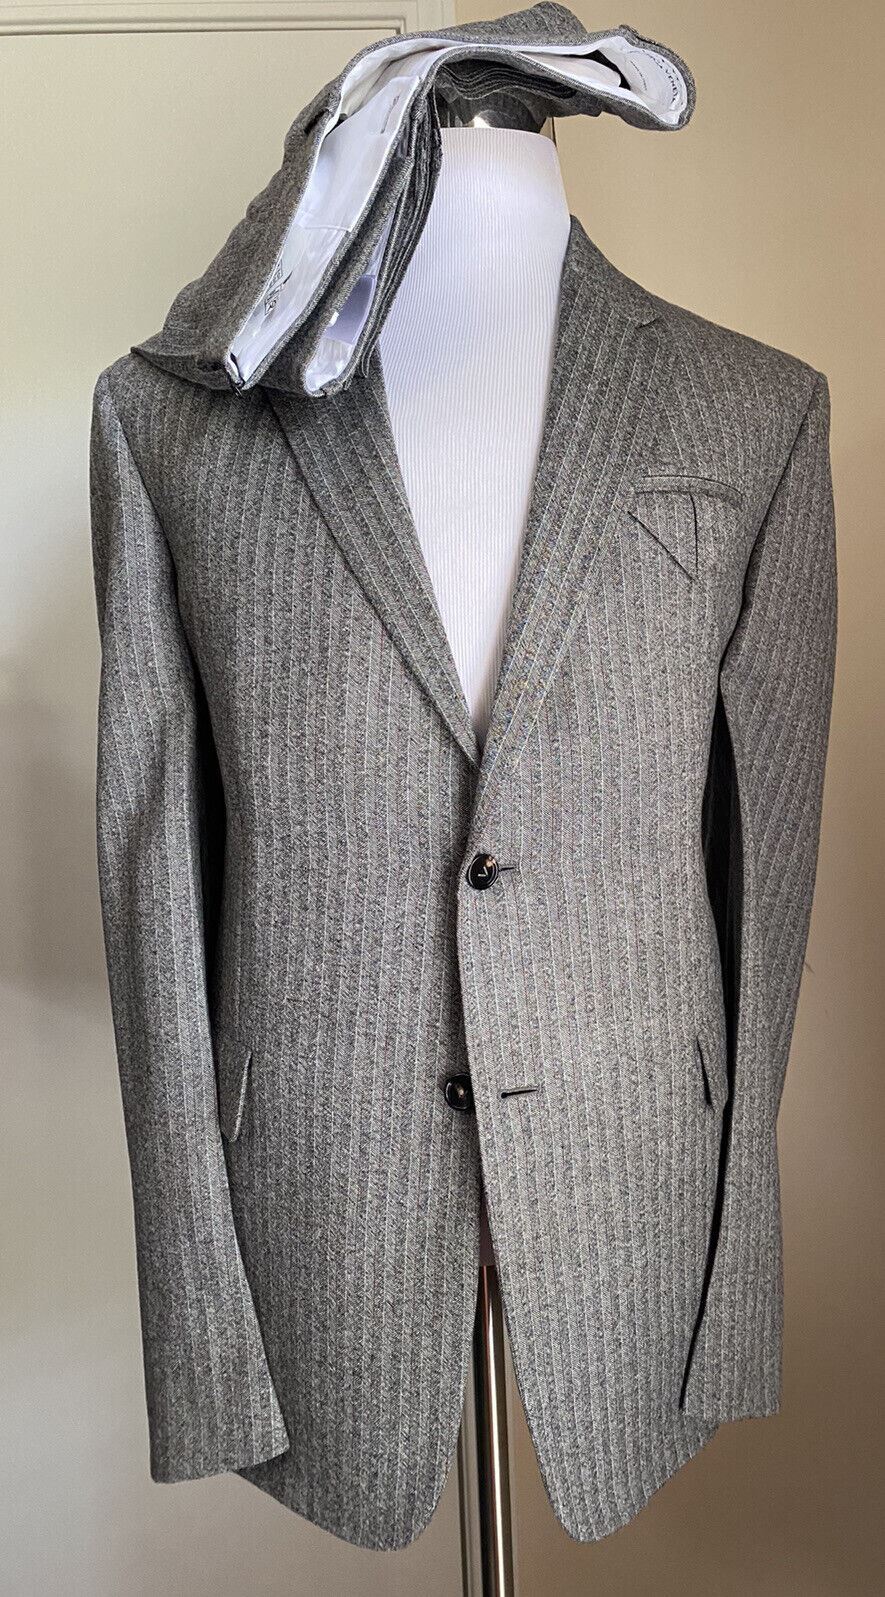 Новый мужской костюм из мягкой шерсти Bottega Veneta за 3500 долларов США, серый 42R US/52R EU Италия